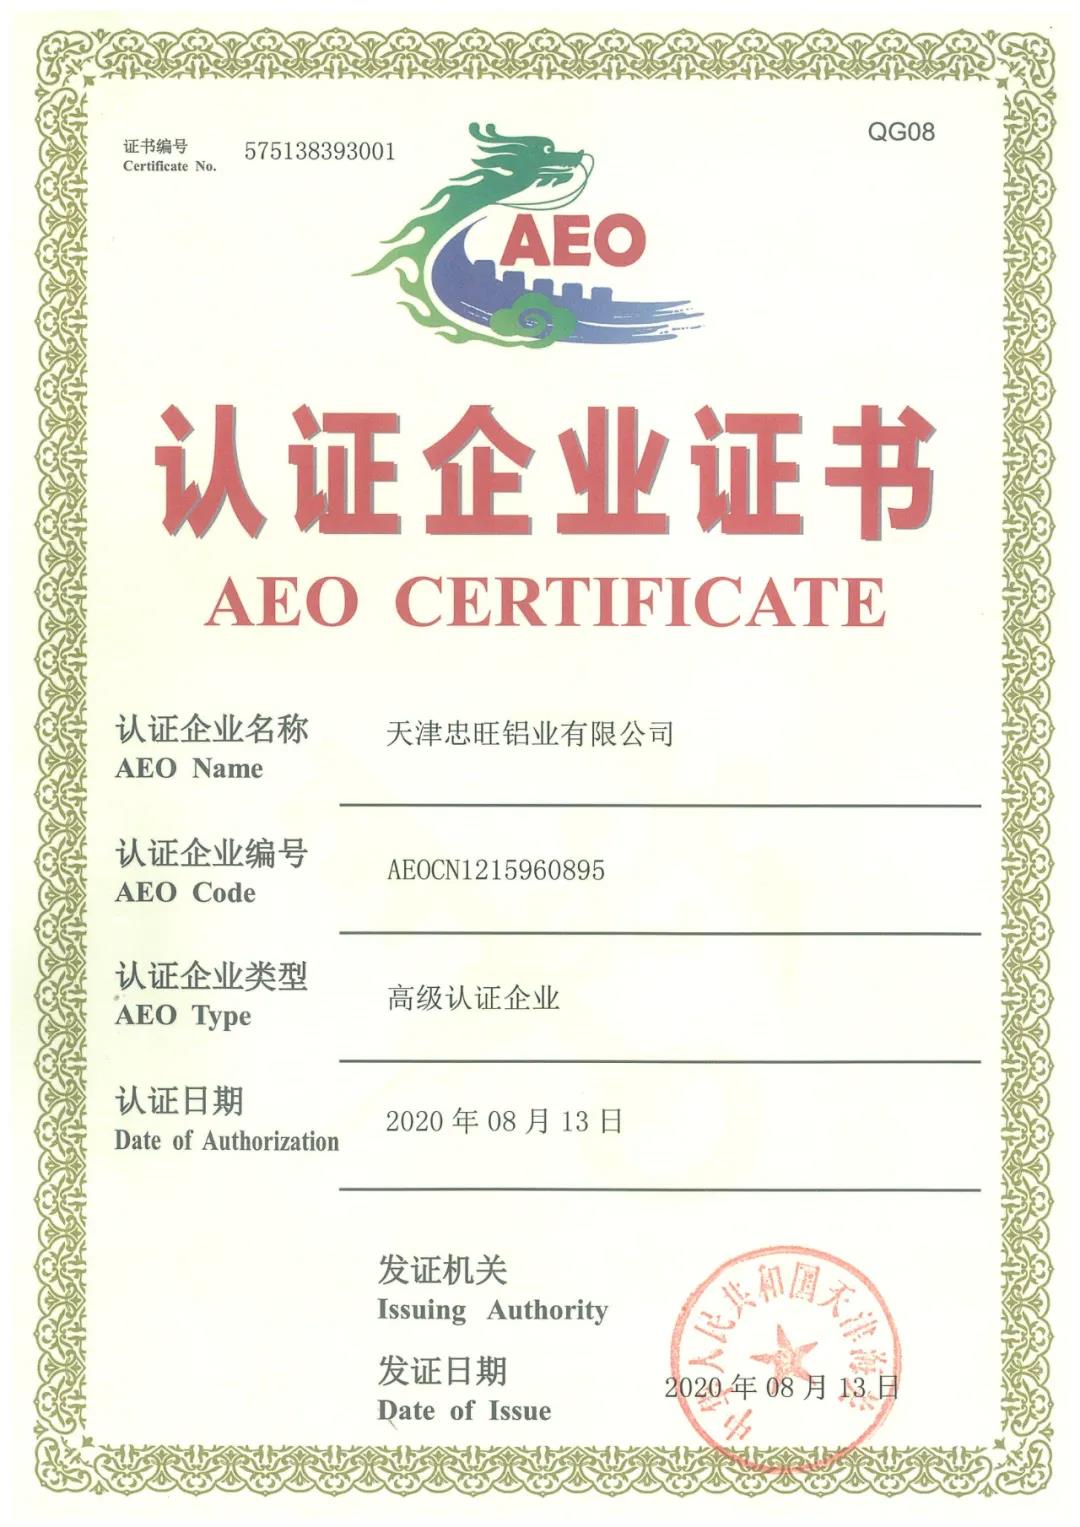 天津华信科技有限公司顺利通过海关AEO高级认证